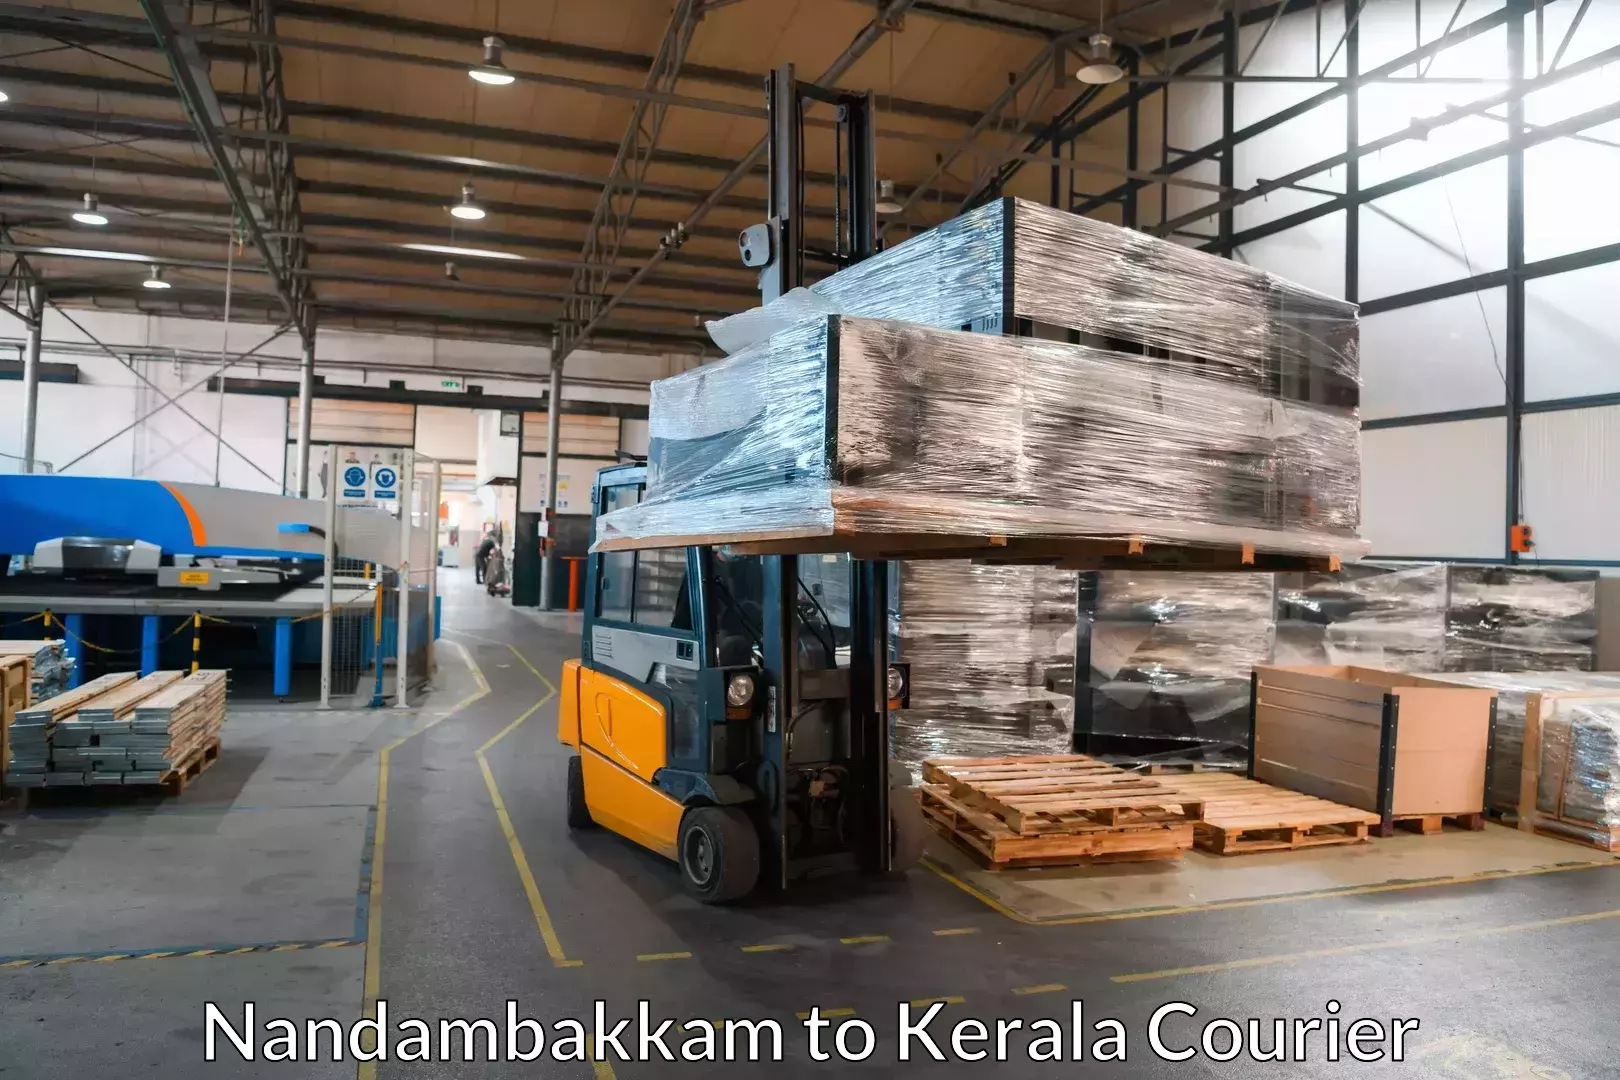 Expert goods movers in Nandambakkam to Kakkur